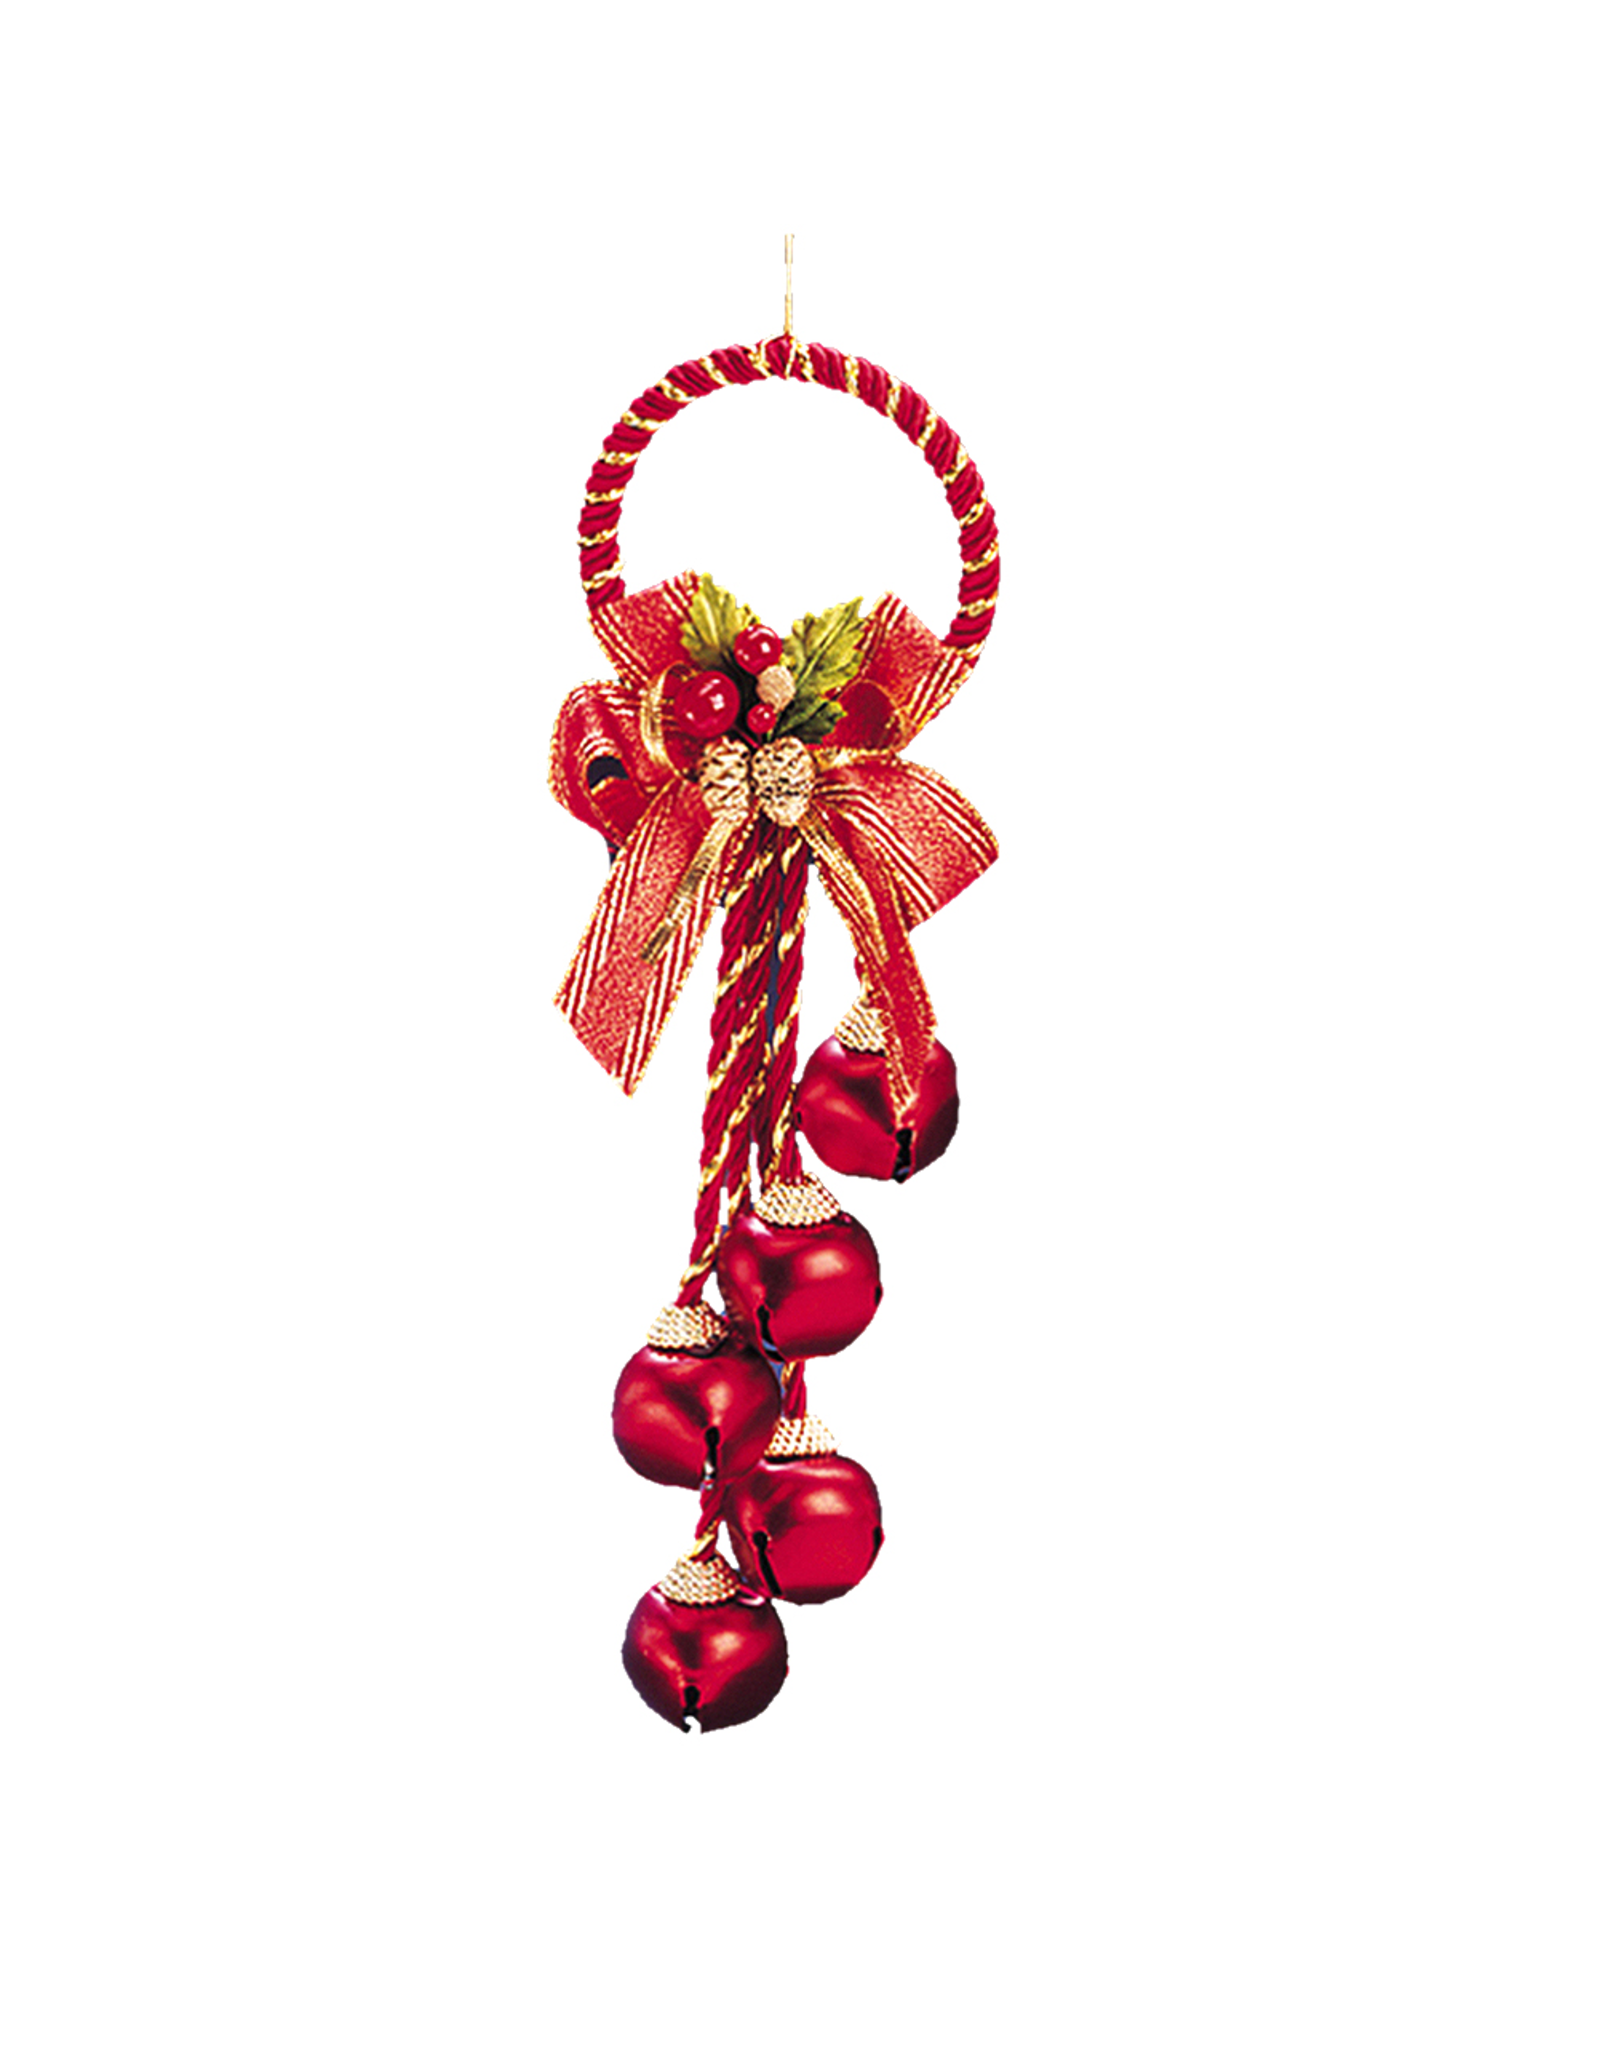 Kurt Adler Jingle Bells Cluster W Bow Door Hanger Ornament RED Bells